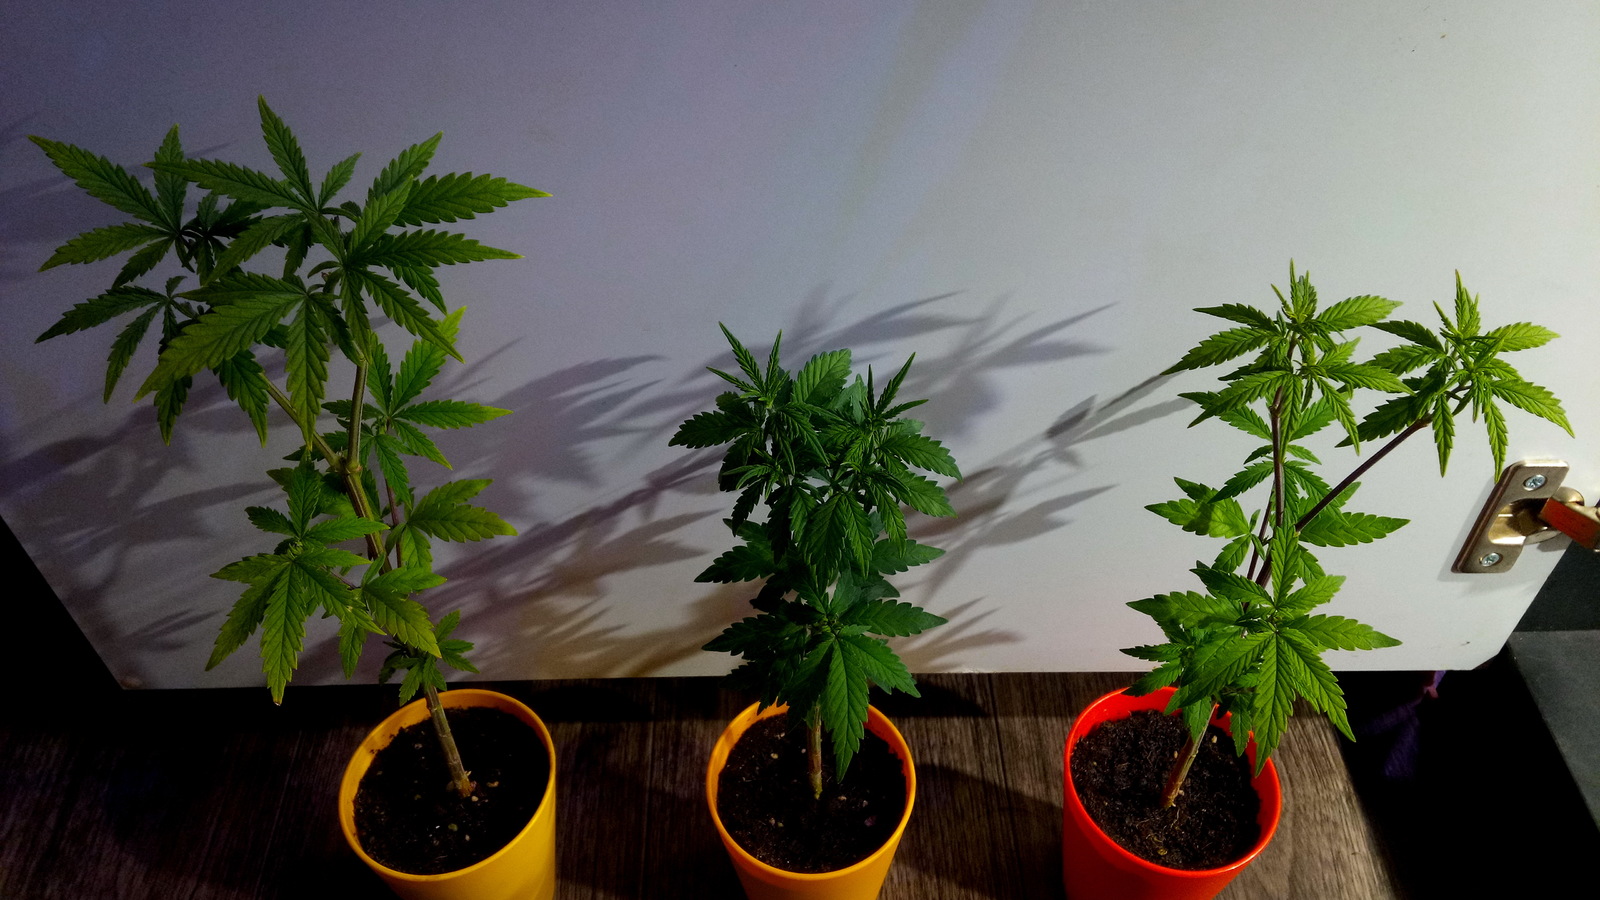 выращивание марихуаны гидропоники домашних условиях